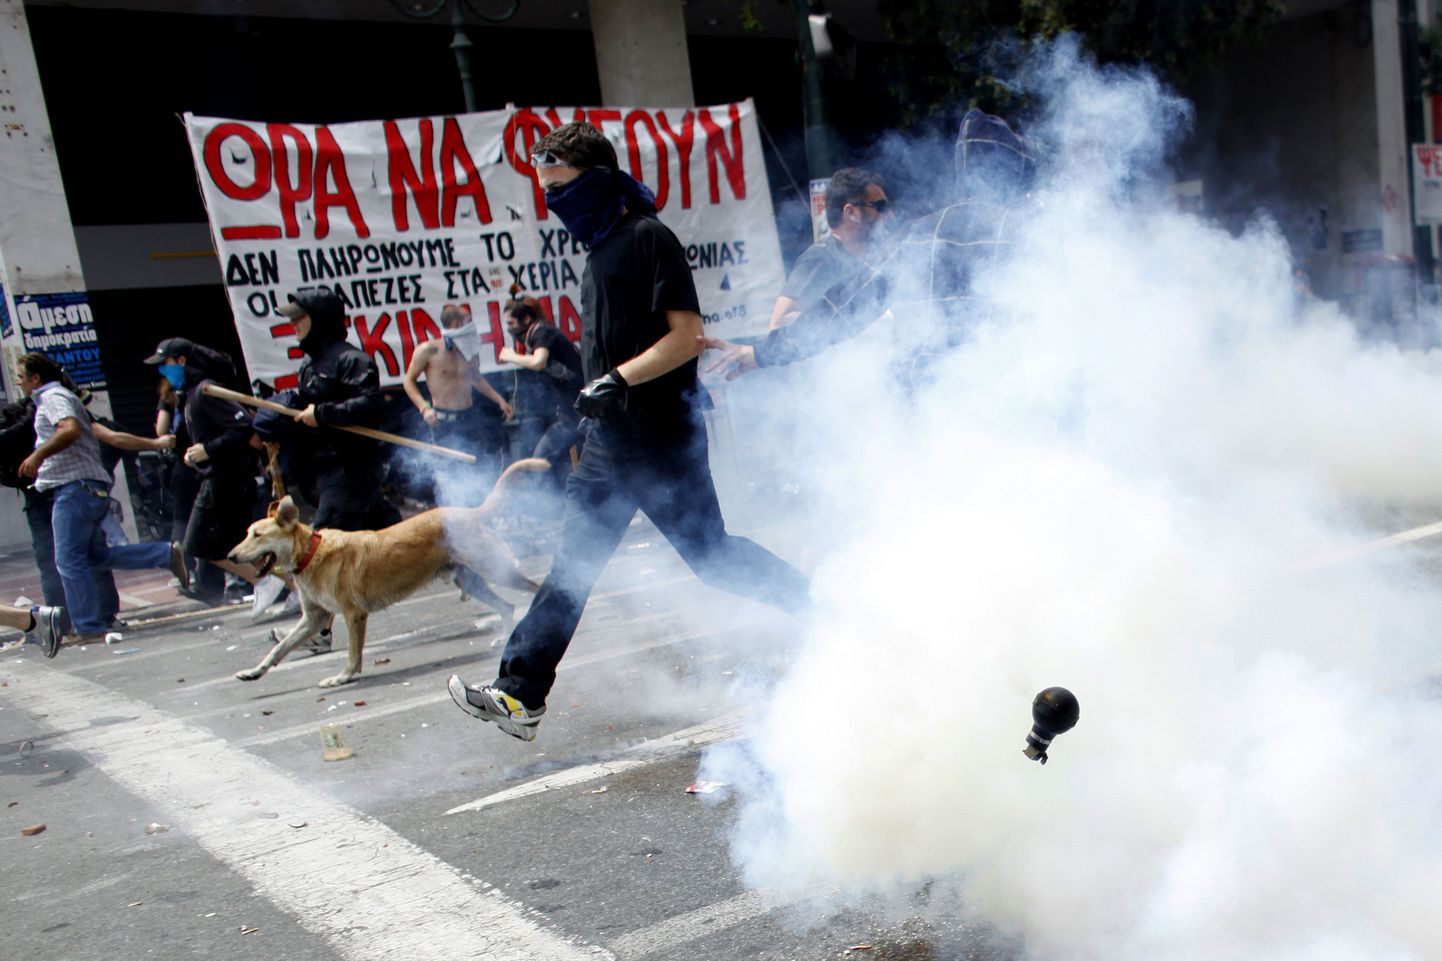 Kreeka protestikoerana tuntud Kanellos meeleavalduste keskel.